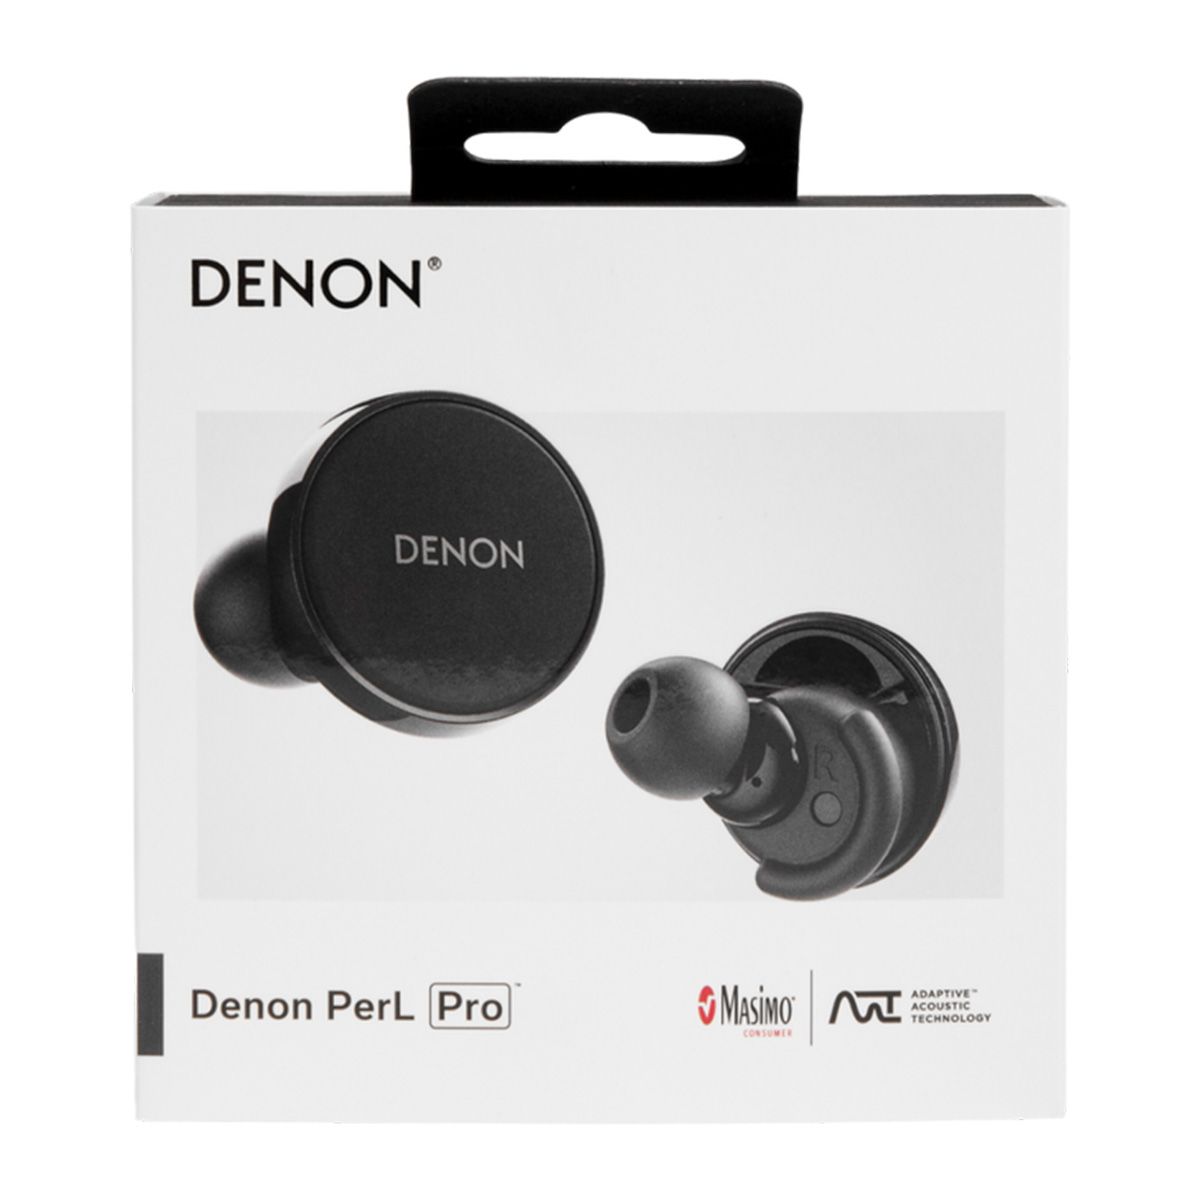 Denon PerL Pro Premium True Wireless Earbuds | Audio Advice